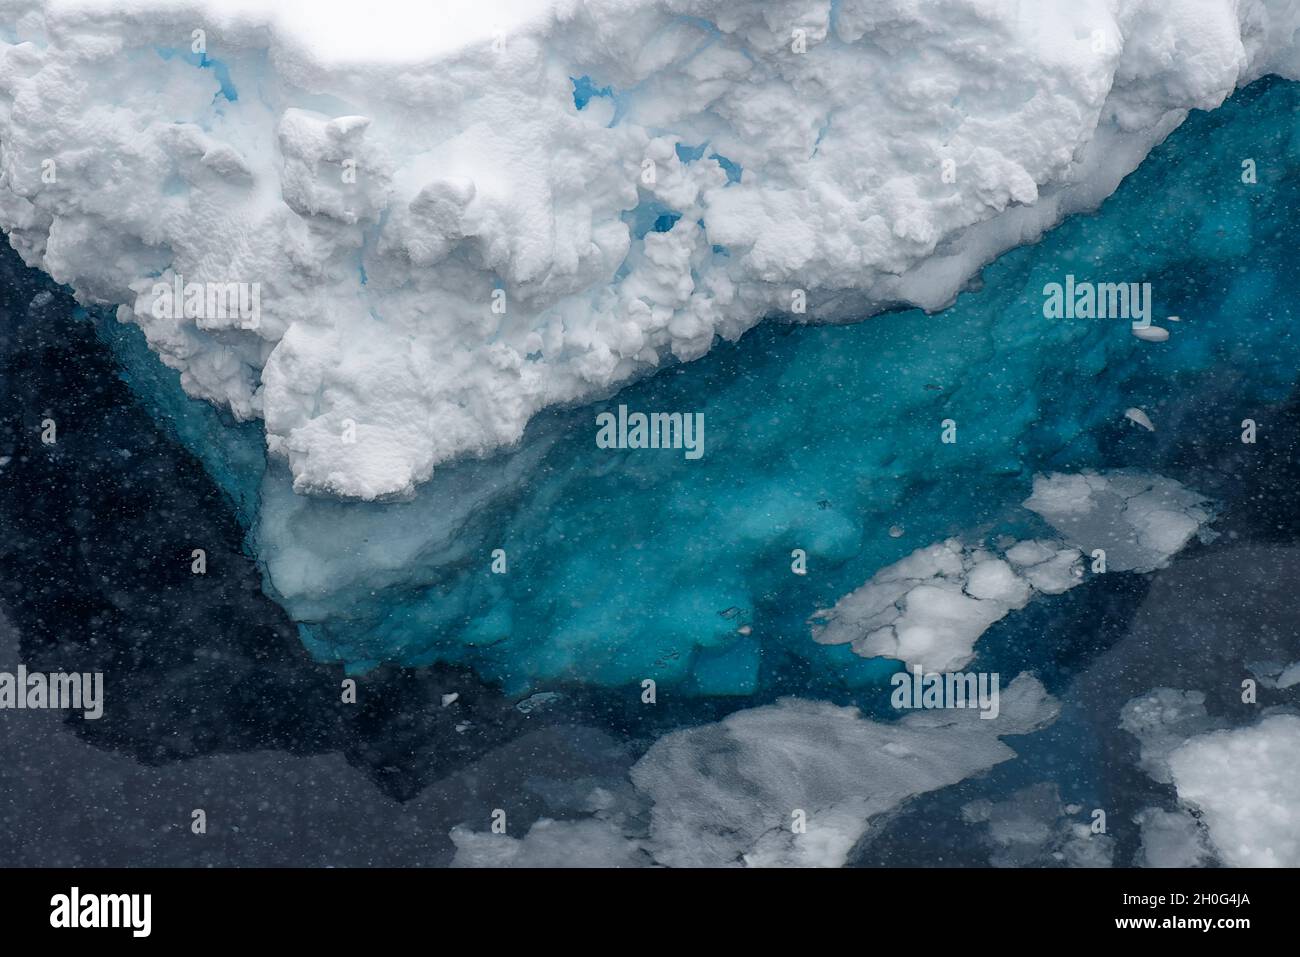 Gros plan d'un iceberg en fonte flottant dans la mer.Océan Sothern, Antarctique Banque D'Images